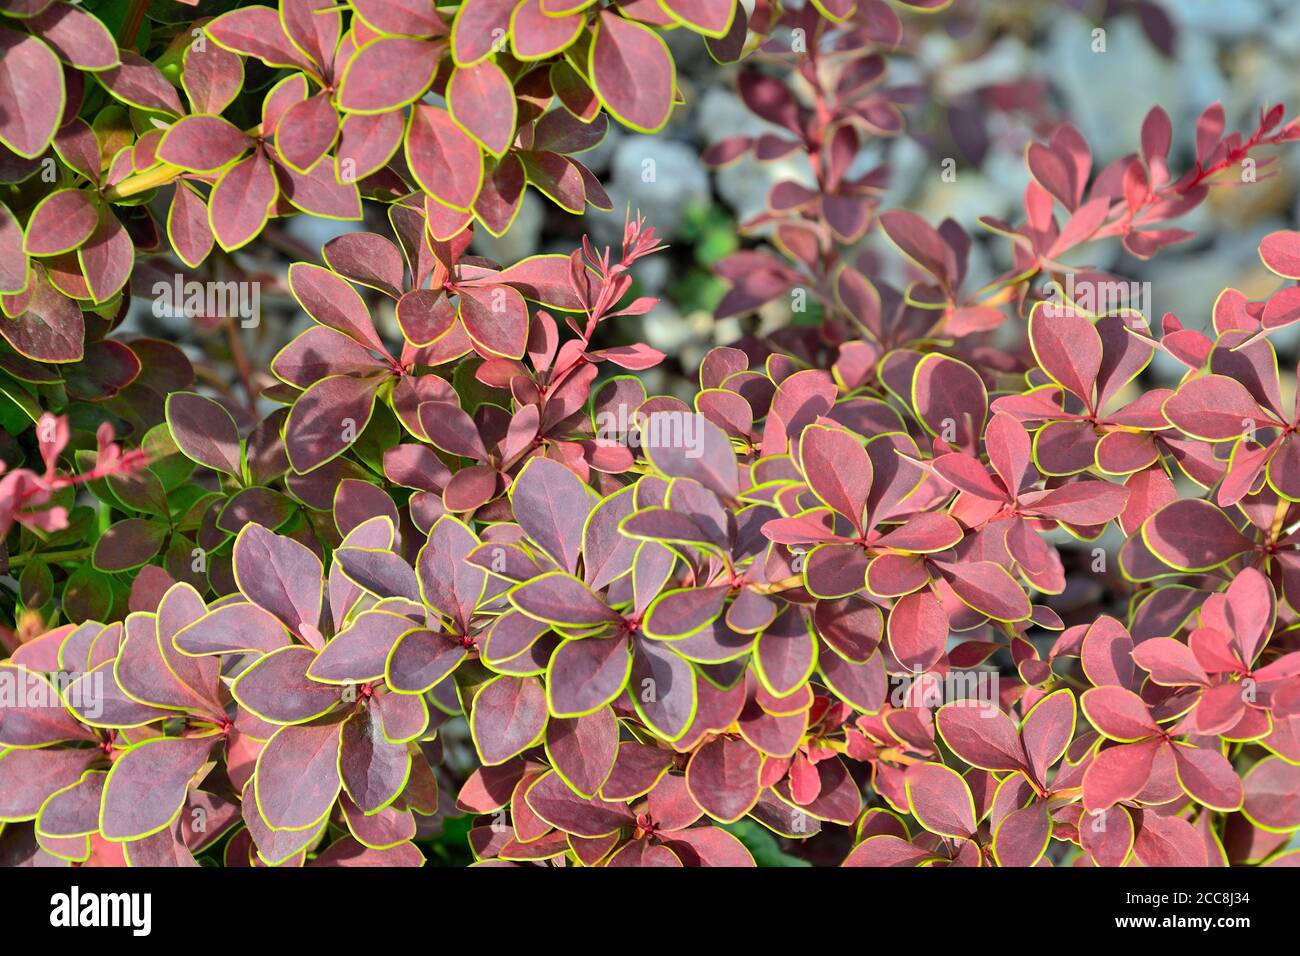 Zweige von Berberis thunbergii Coronita - farbenfrohe Zierpflanze für die Gartengestaltung. Lila Blätter mit gelb grünen Rändern - Schönheit und Frische Stockfoto